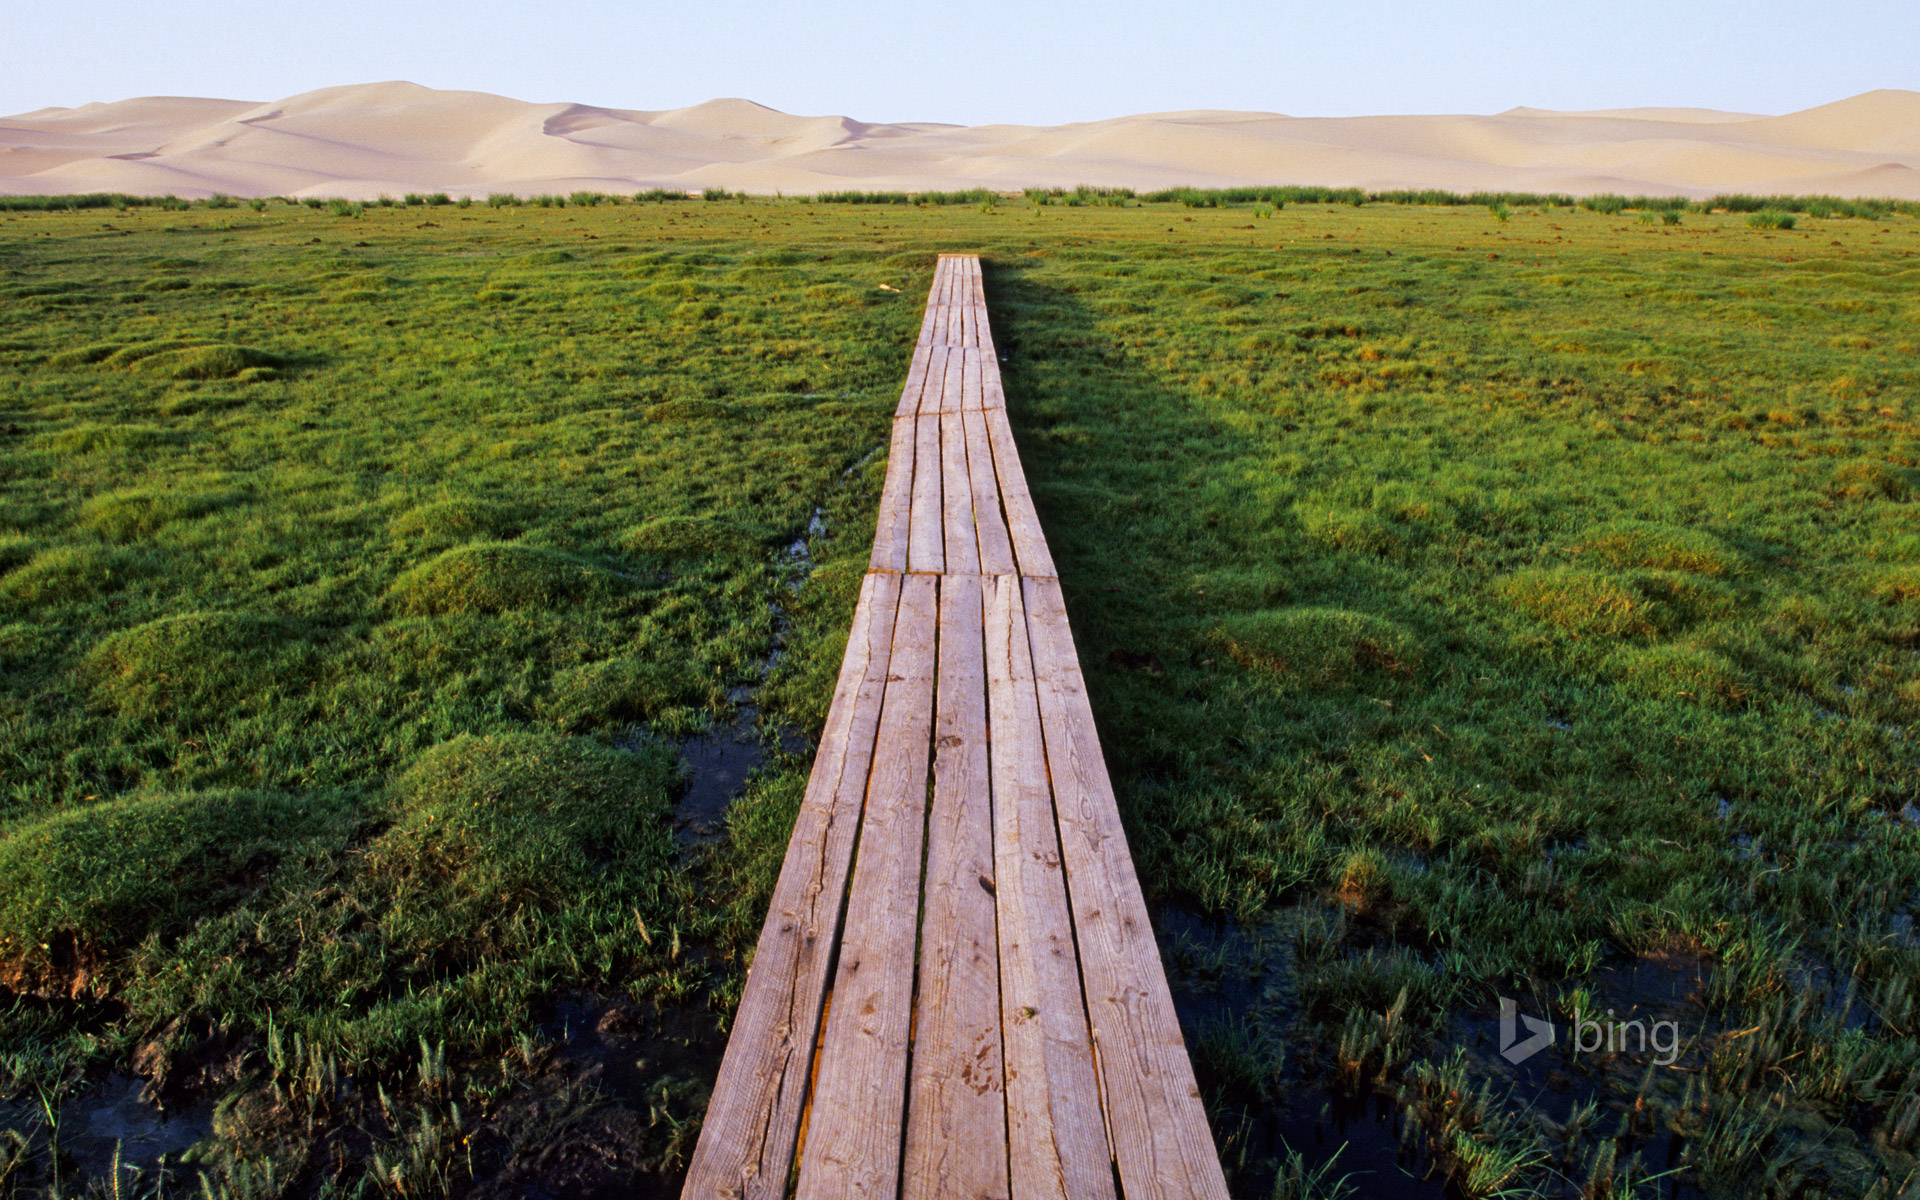 Bridge over marshland near the Khongoryn Els sand dunes in the Gobi Desert, Mongolia